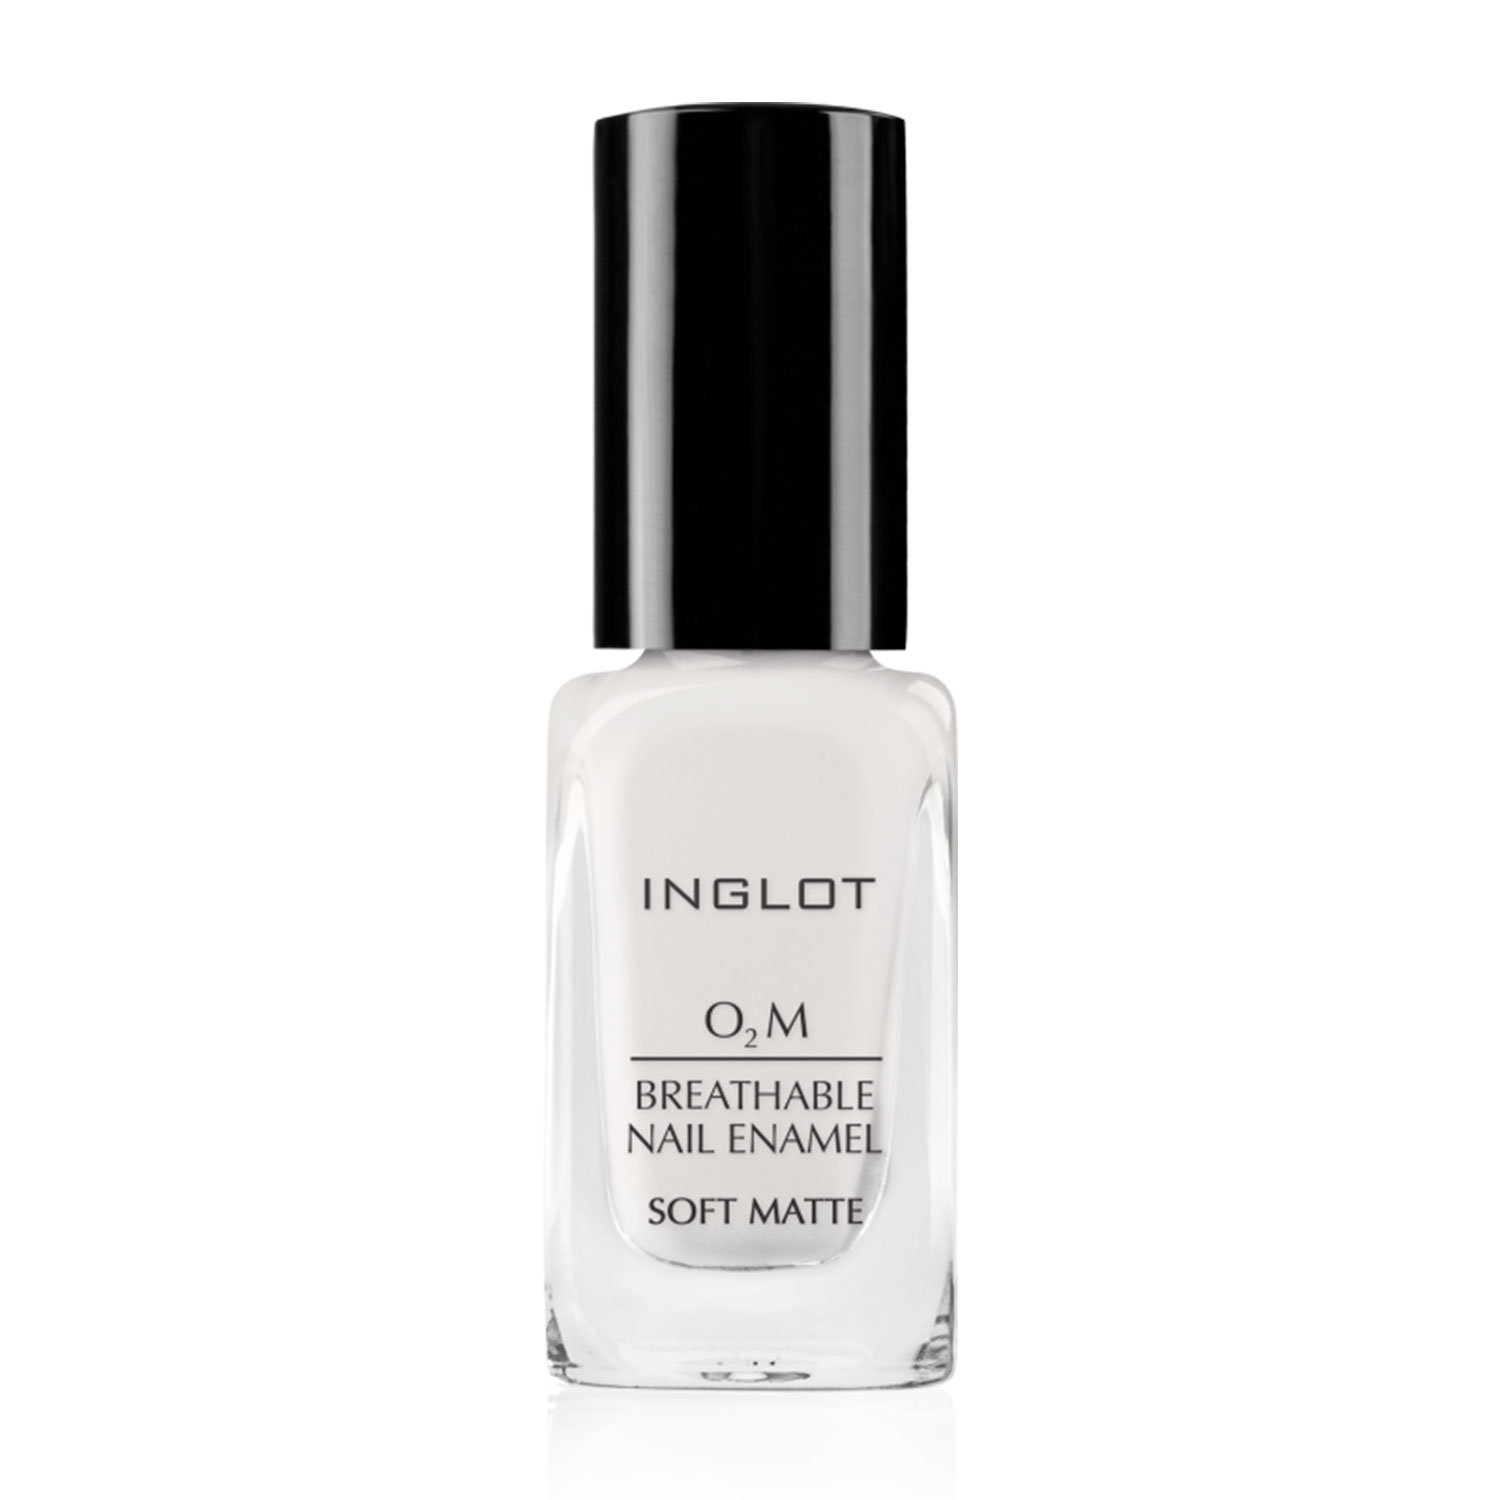 Inglot O2m Breathable Nail Enamel Soft Matte, 11ml-512 White